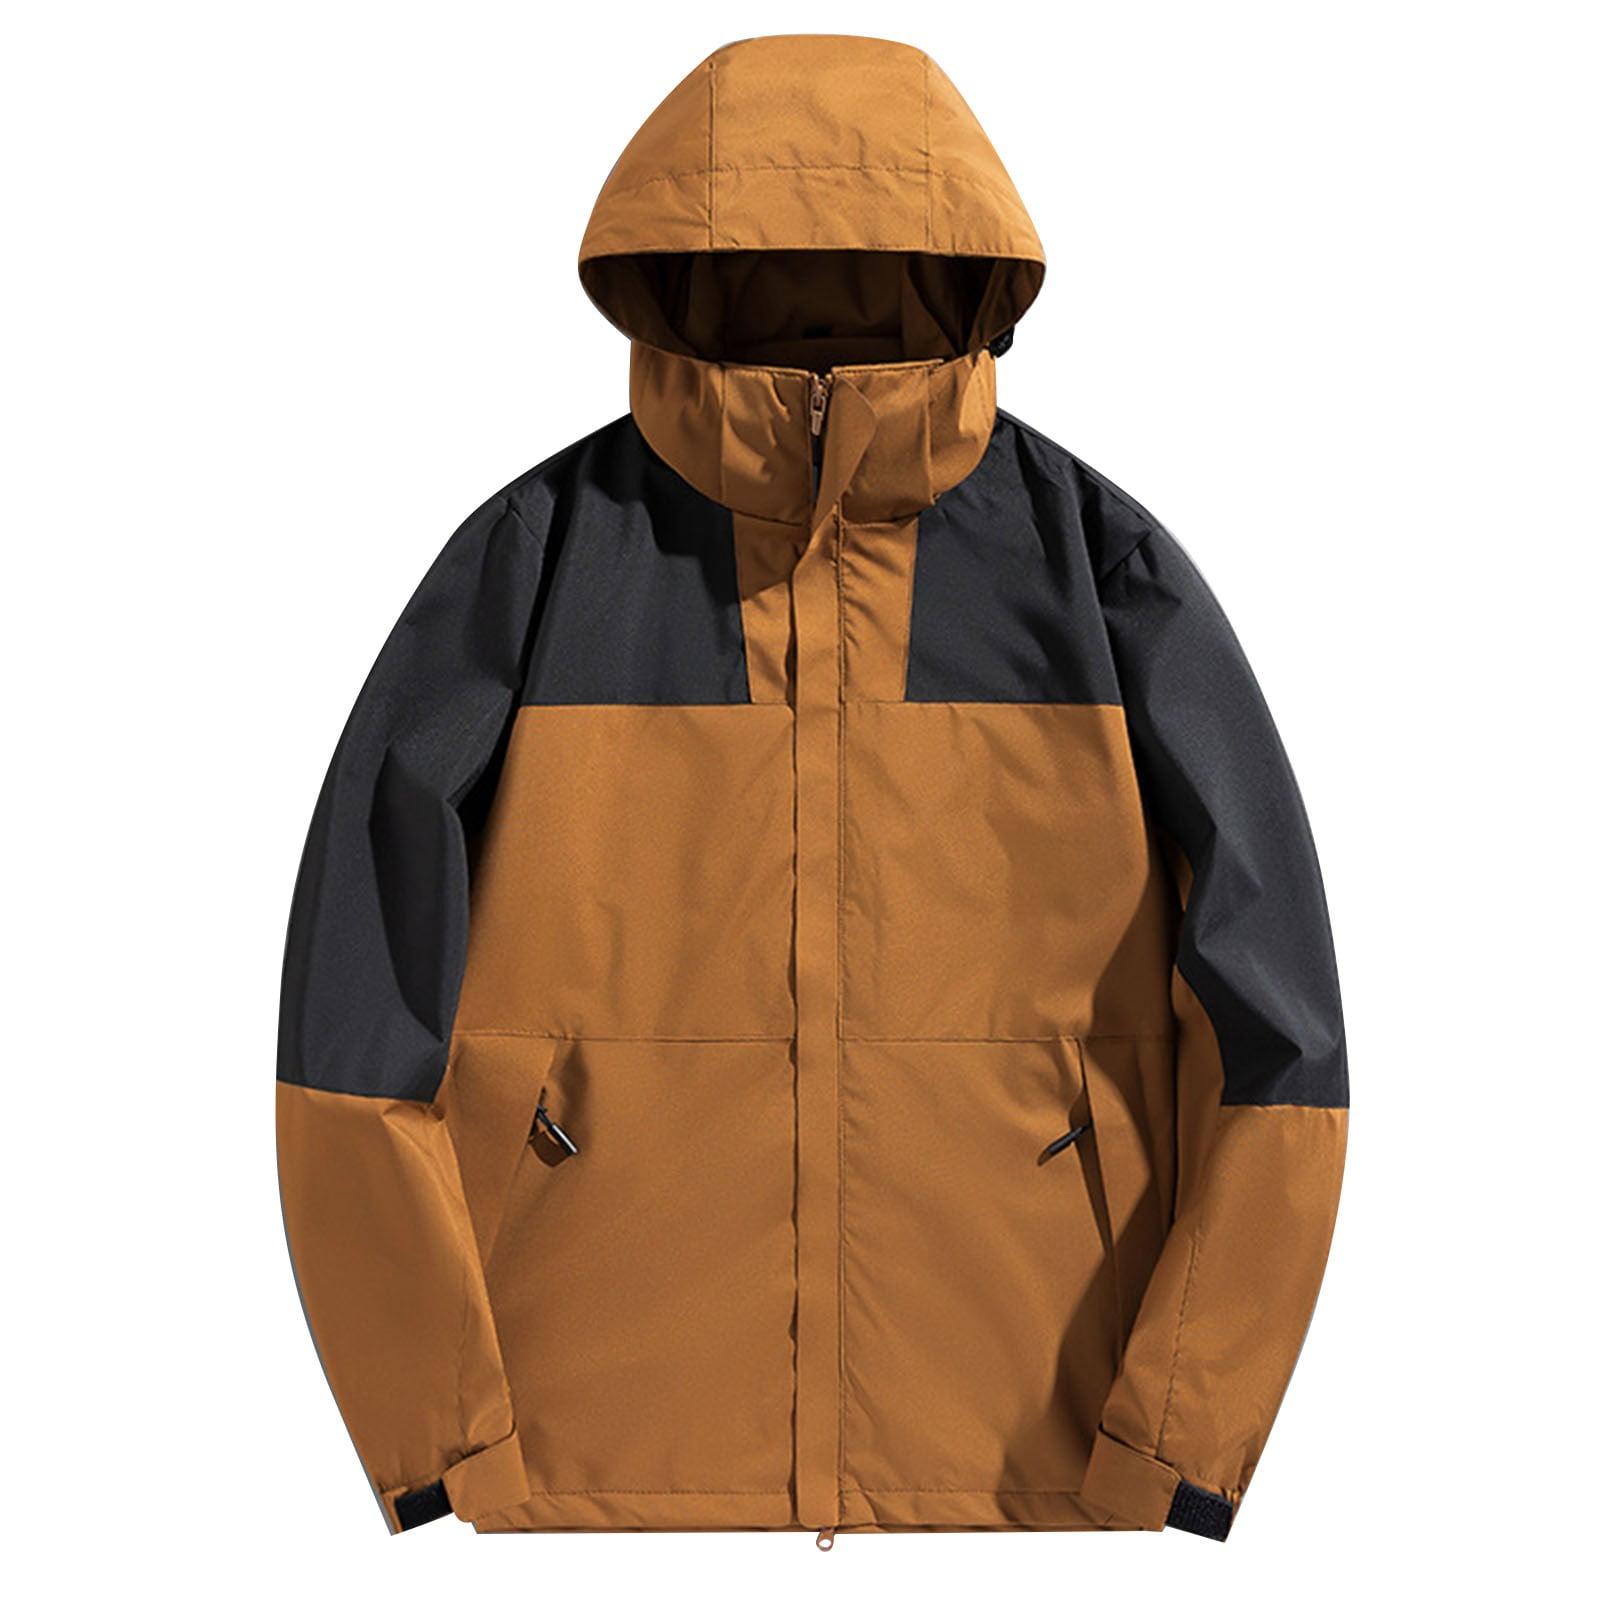 Lovskoo Womens Rain Jacket Hooded Technical Winter Coat Casual Waterproof Windbreaker 6120